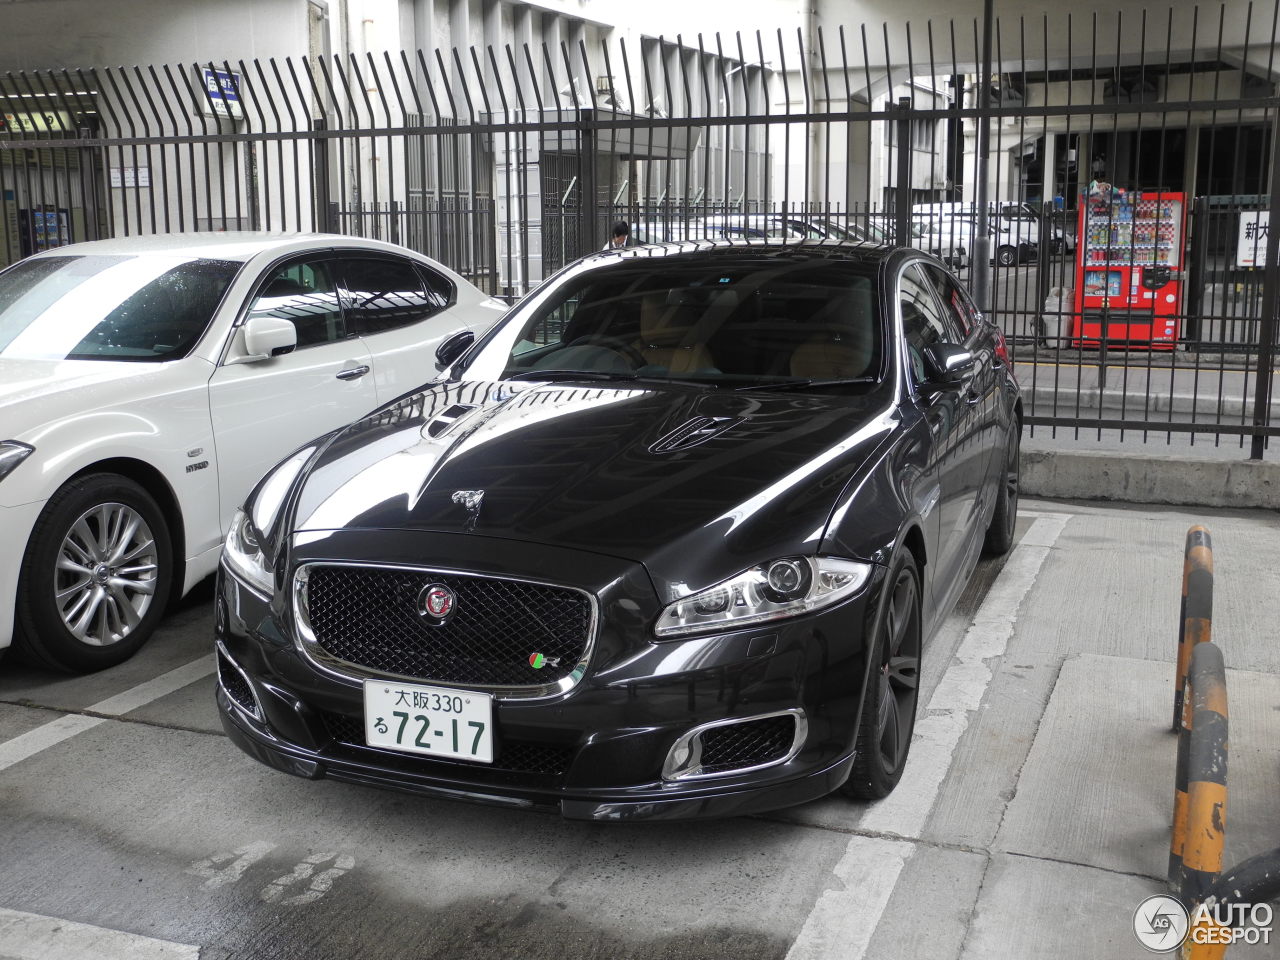 Jaguar XJR 2013